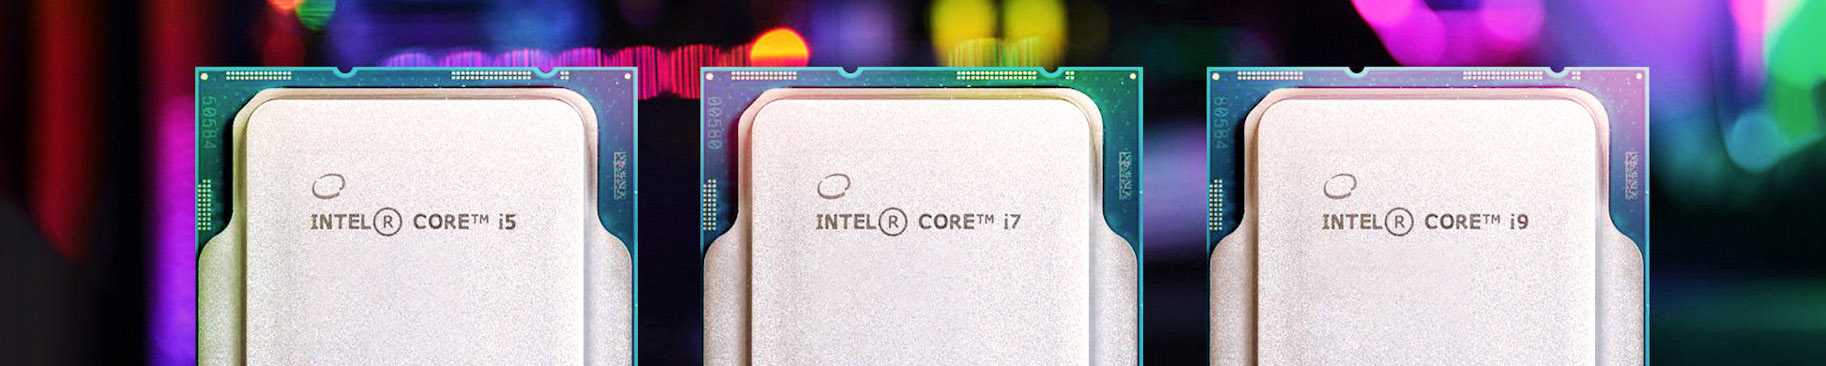 Intel-Core-12600k-12700K-12900K-Hero.jpg